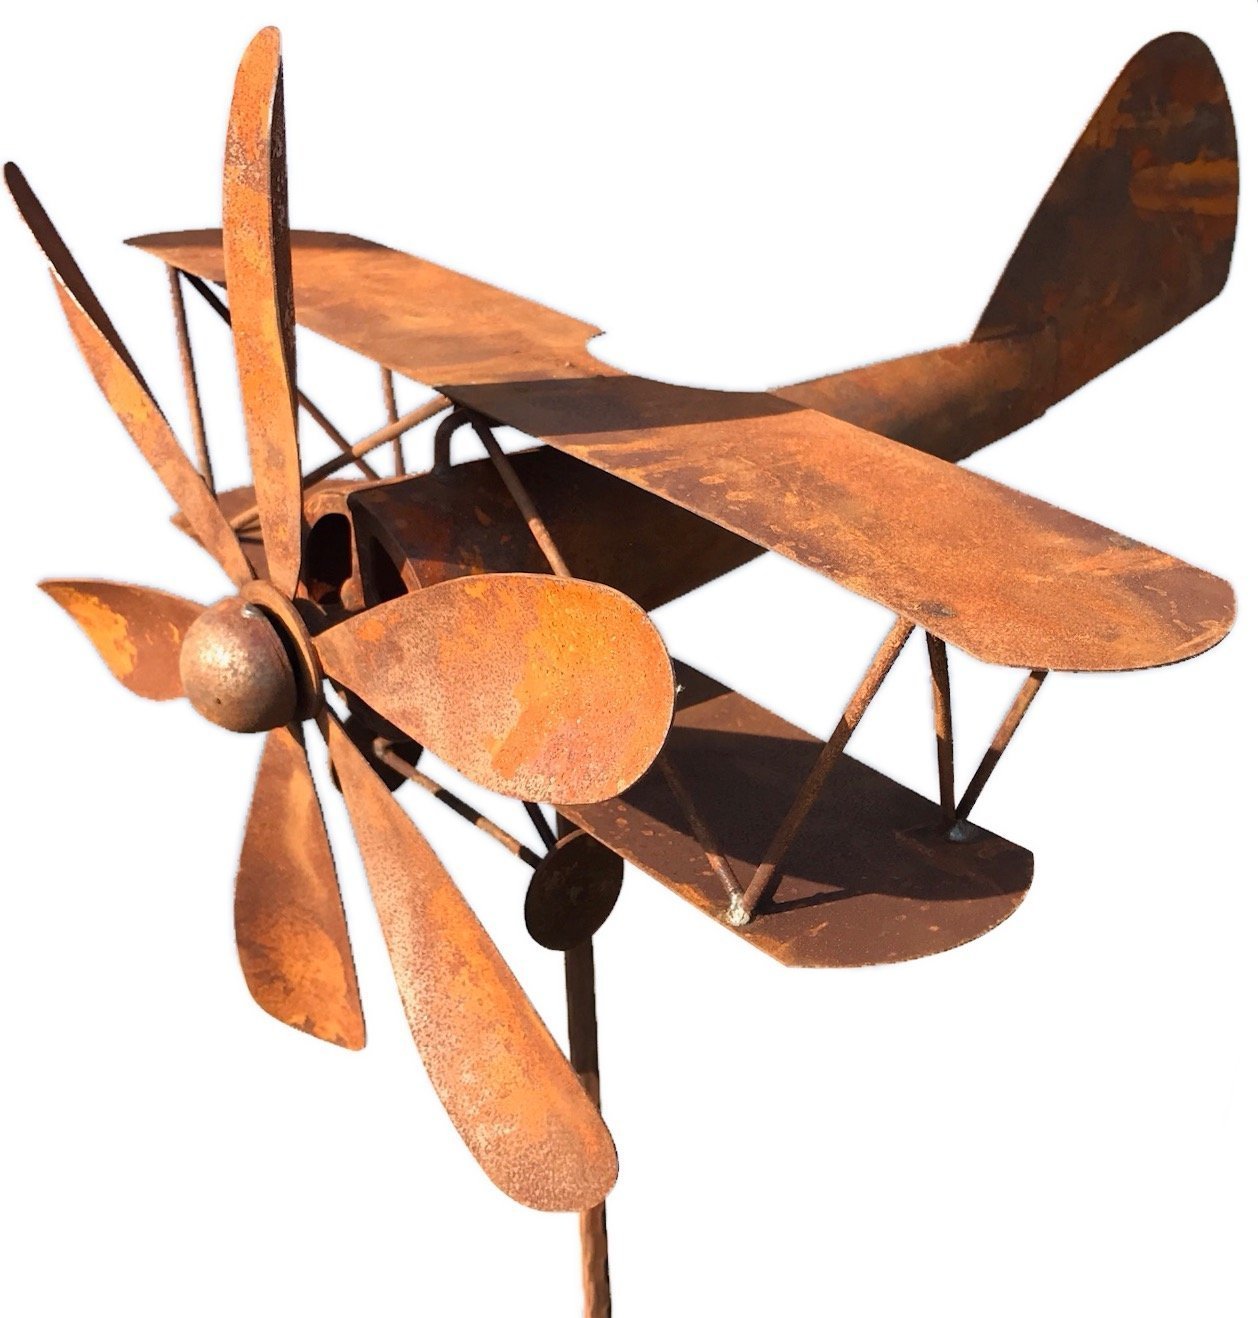 Metall Windrad 'Flugzeug' - massives Windspiel Windmühle für den Garten - wetterfest und standfest - mit bestem Kugellager - aus Vollmetall mit Edelrost-Patina – Höhe 167 cm